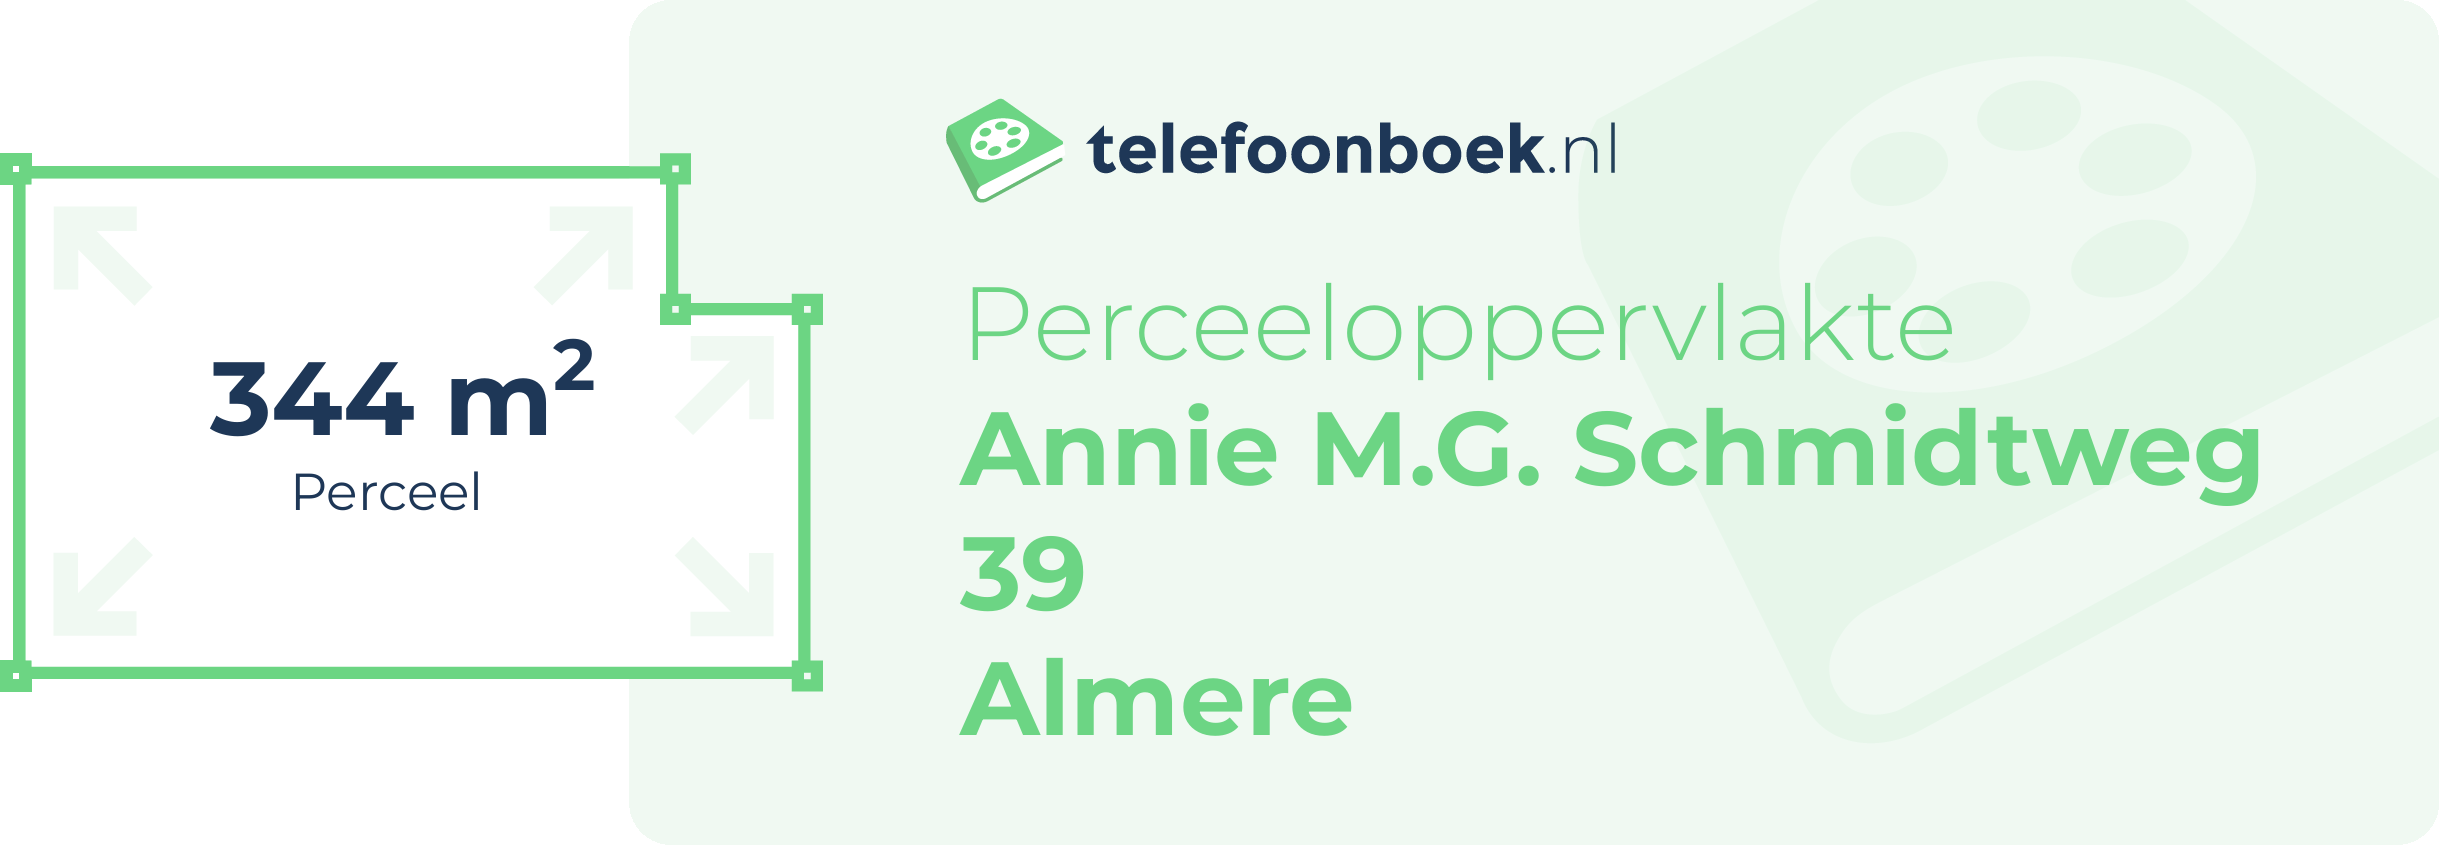 Perceeloppervlakte Annie M.G. Schmidtweg 39 Almere